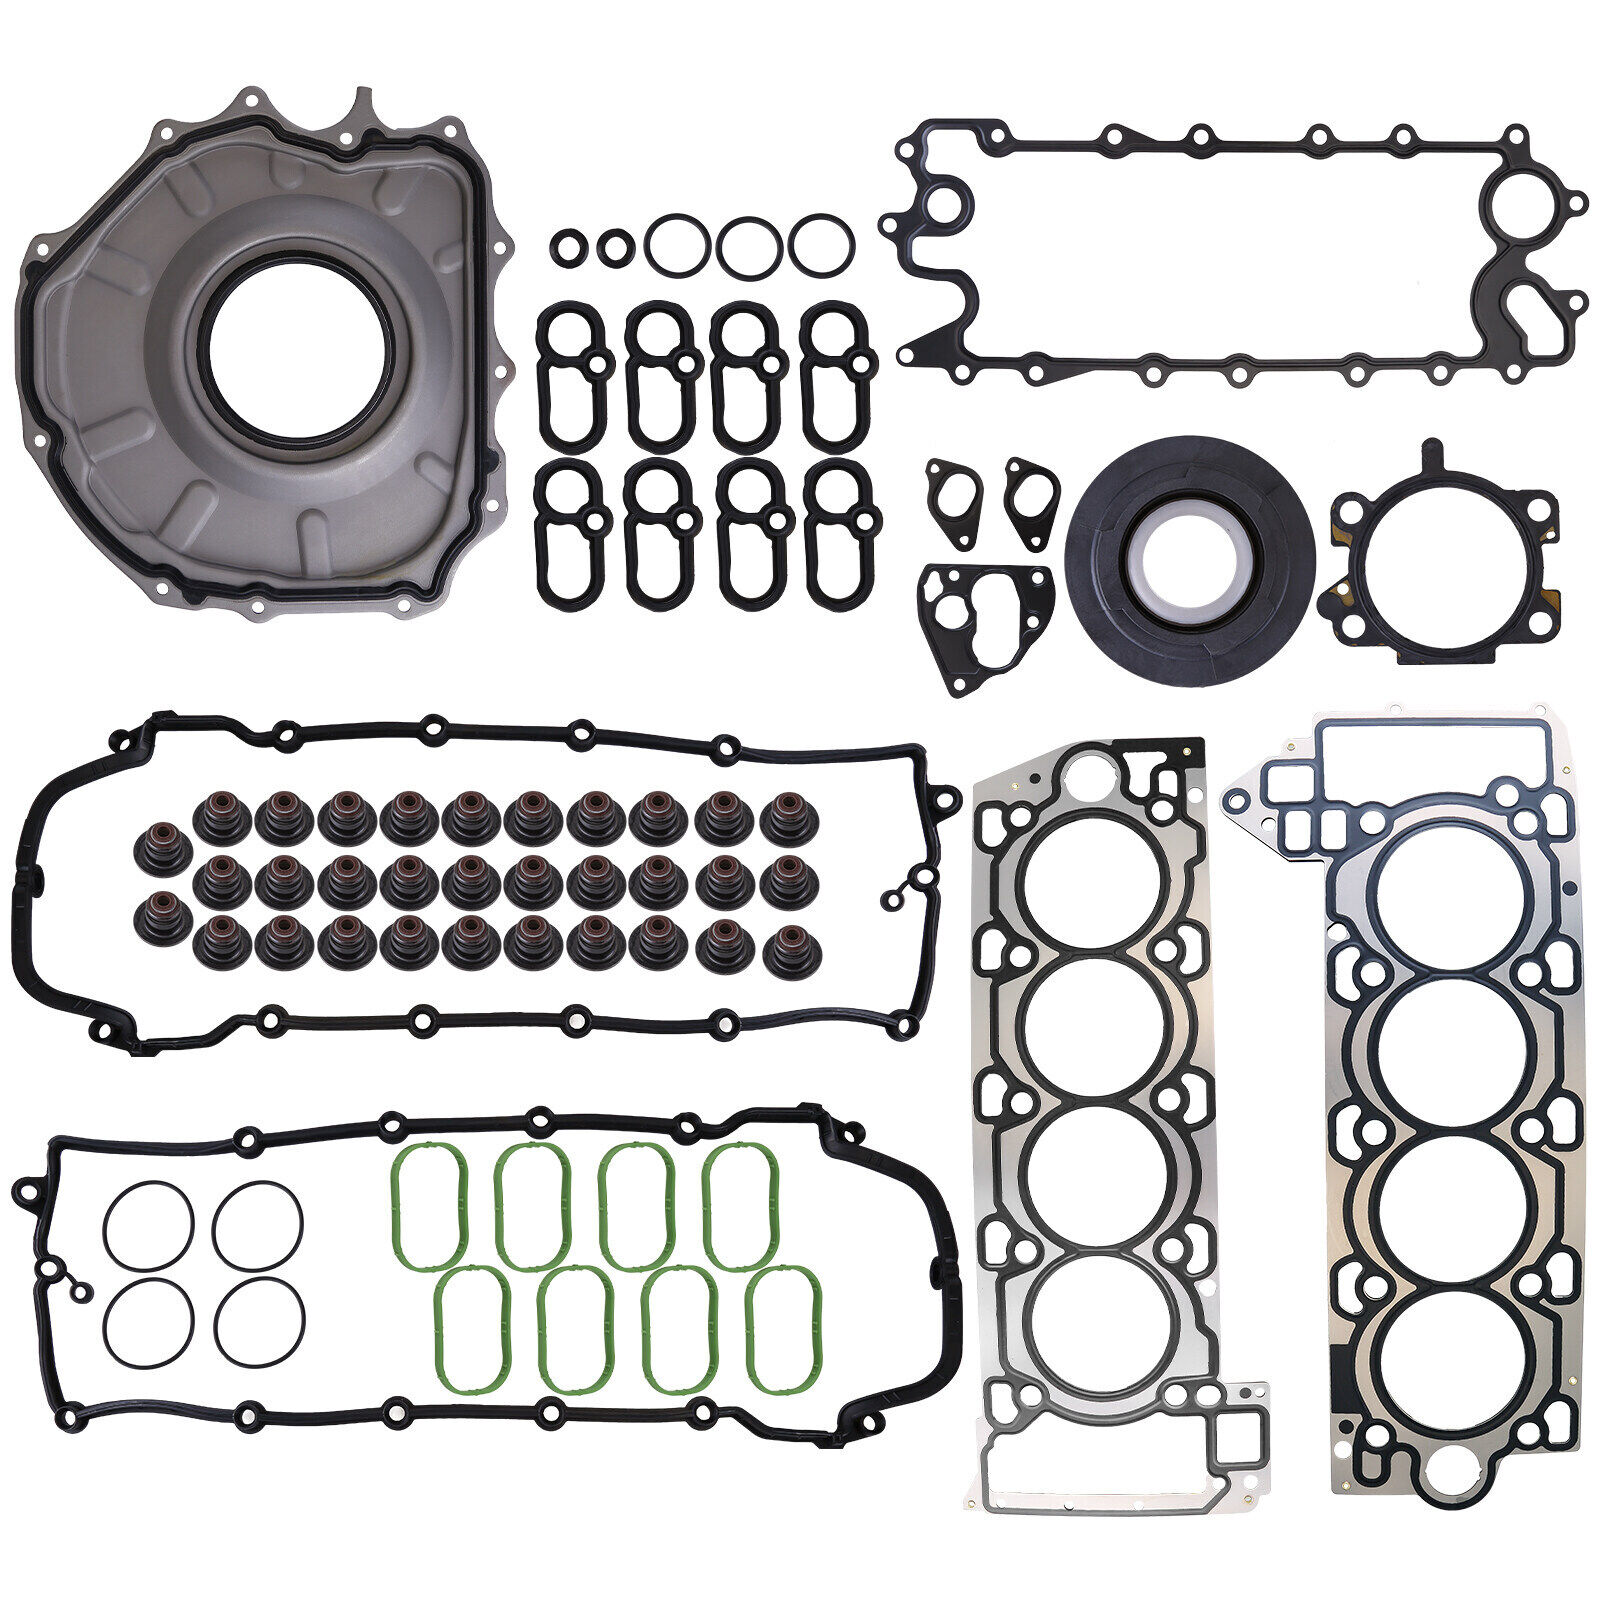 AJ133 Engine Cylinder Head Gasket Set For Jaguar XE XJ F-Type Land Rover 5.0L V8